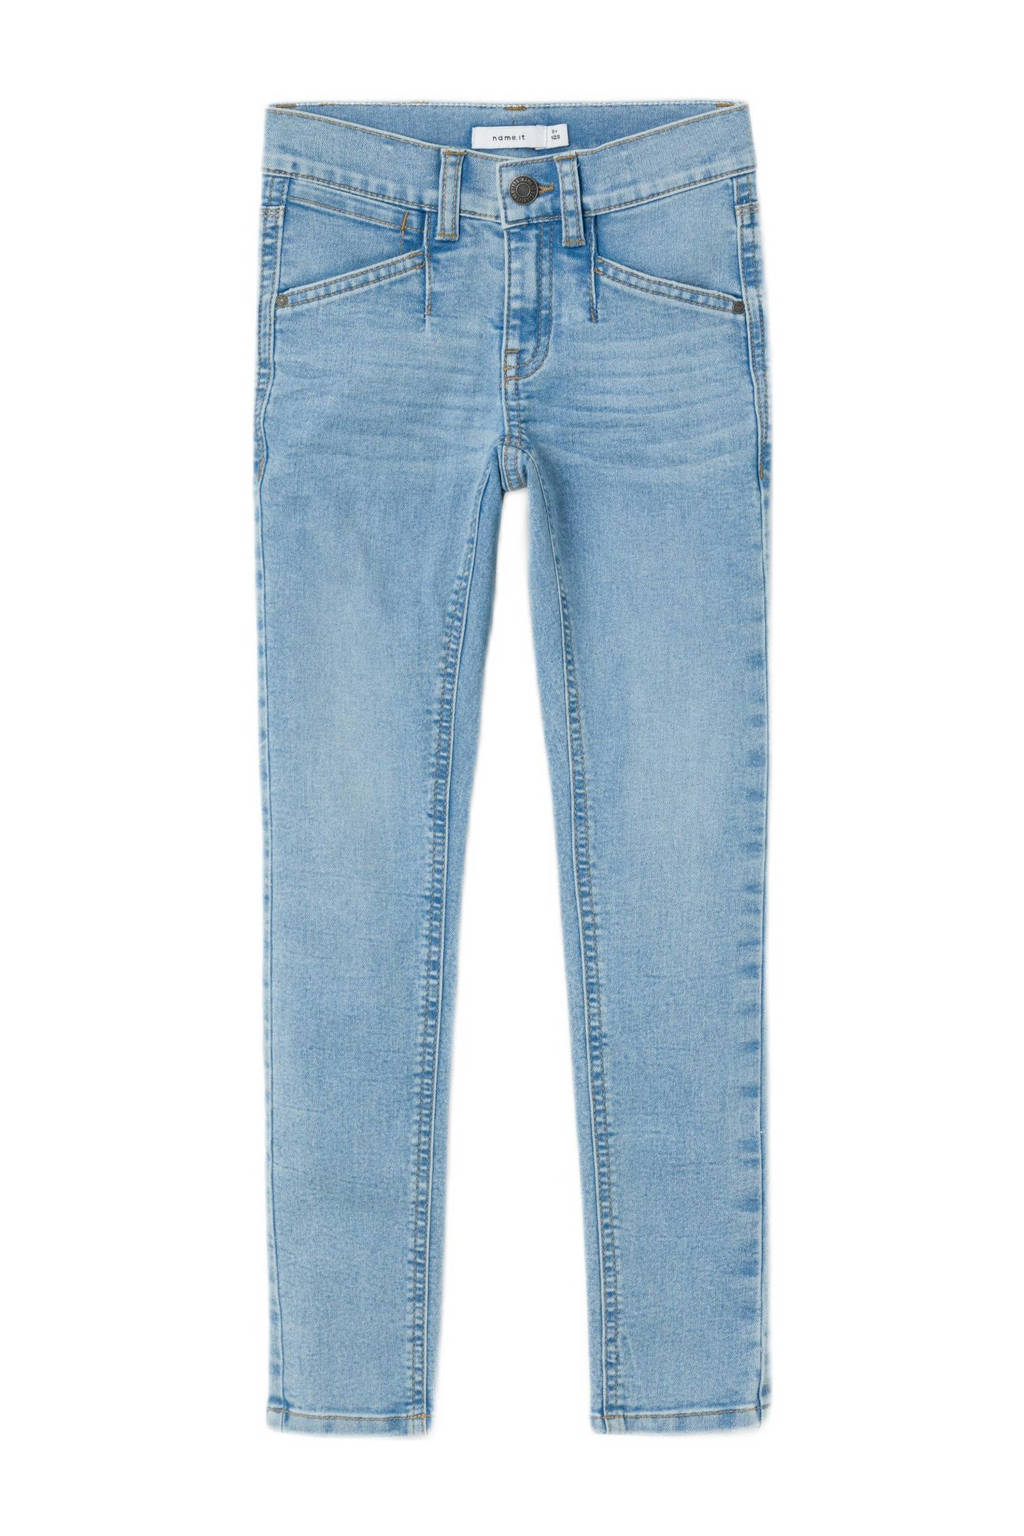 skinny jeans NMFPOLLY light blue denim